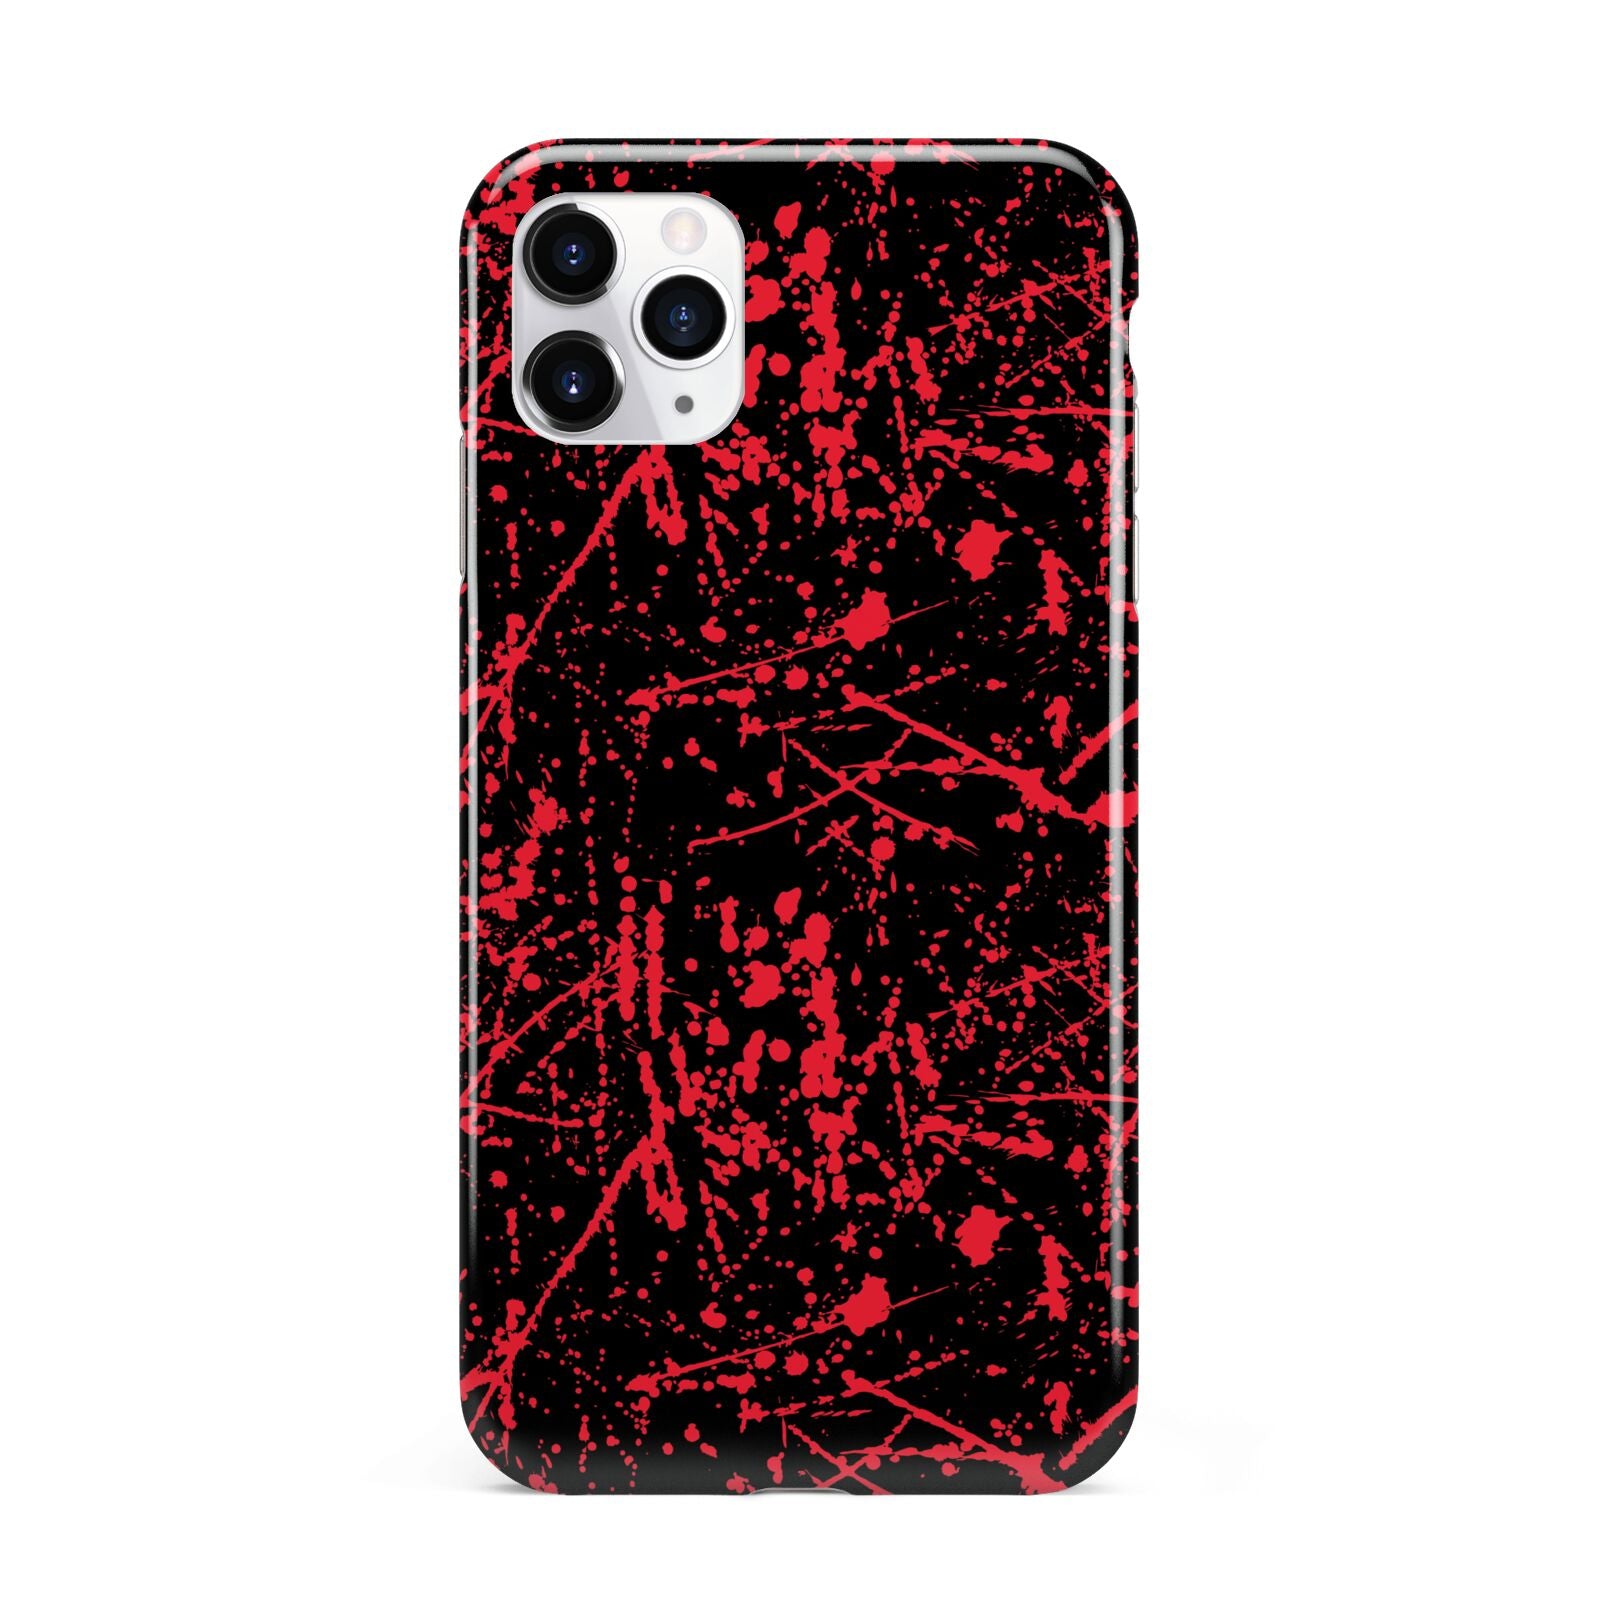 Blood Splatters iPhone 11 Pro Max 3D Tough Case